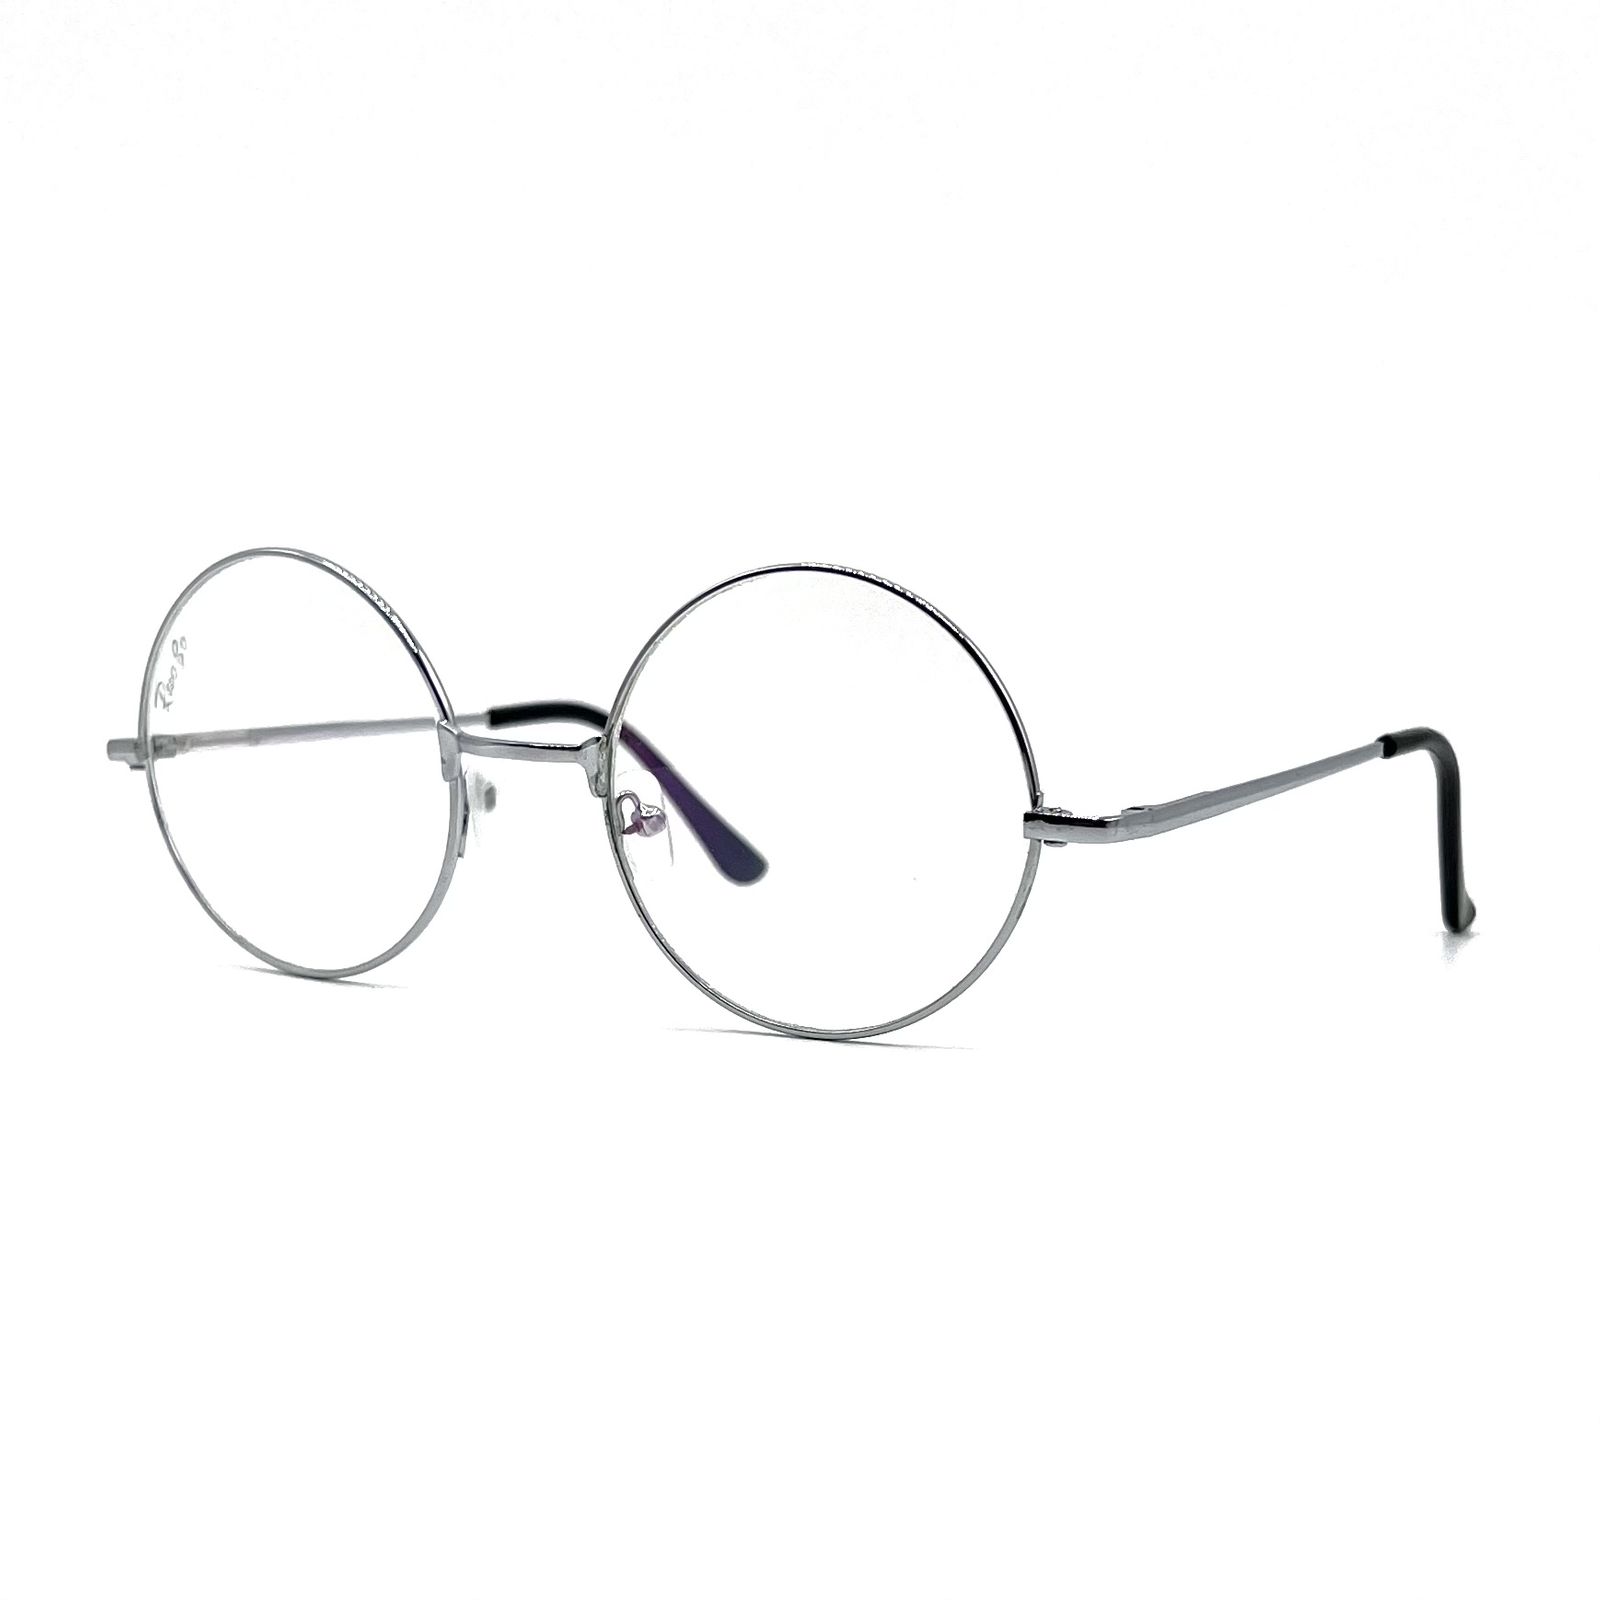 فریم عینک طبی مدل Fr 6546 -  - 3